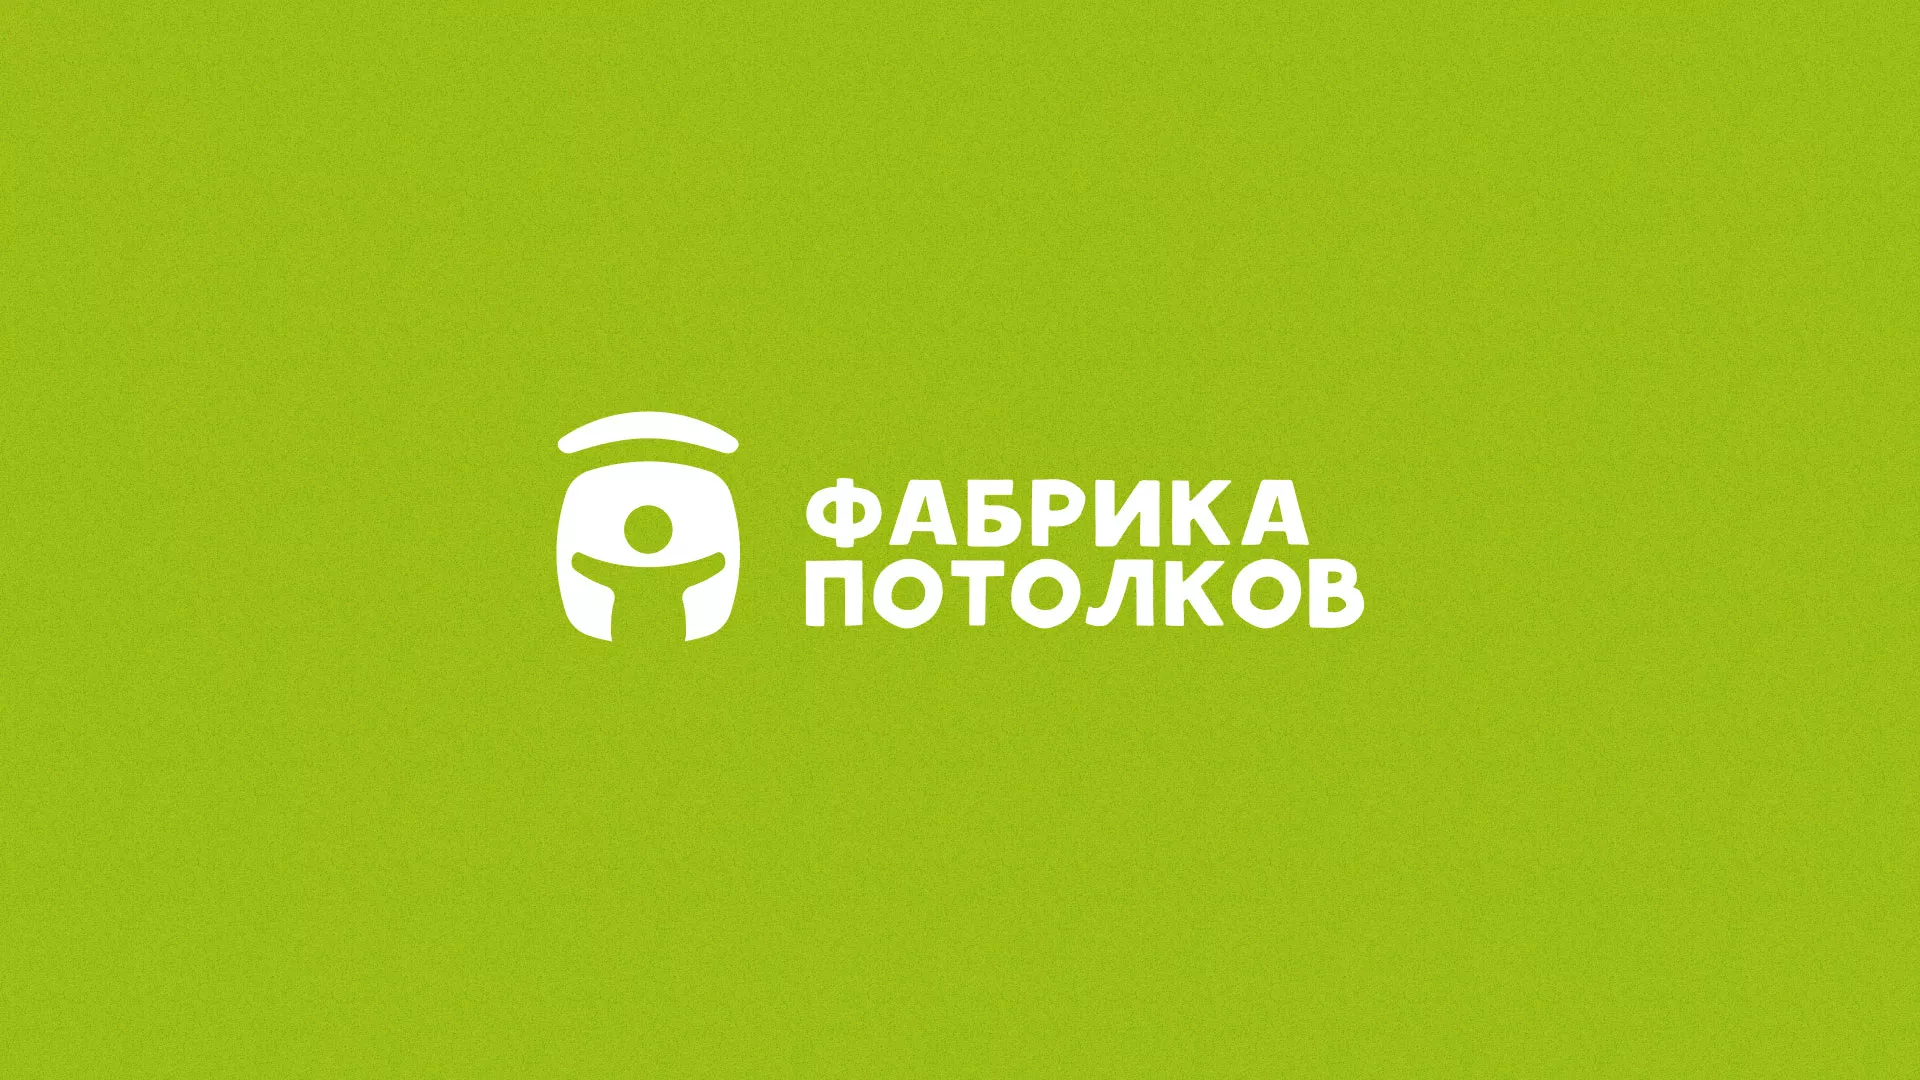 Разработка логотипа для производства натяжных потолков в Михайловке